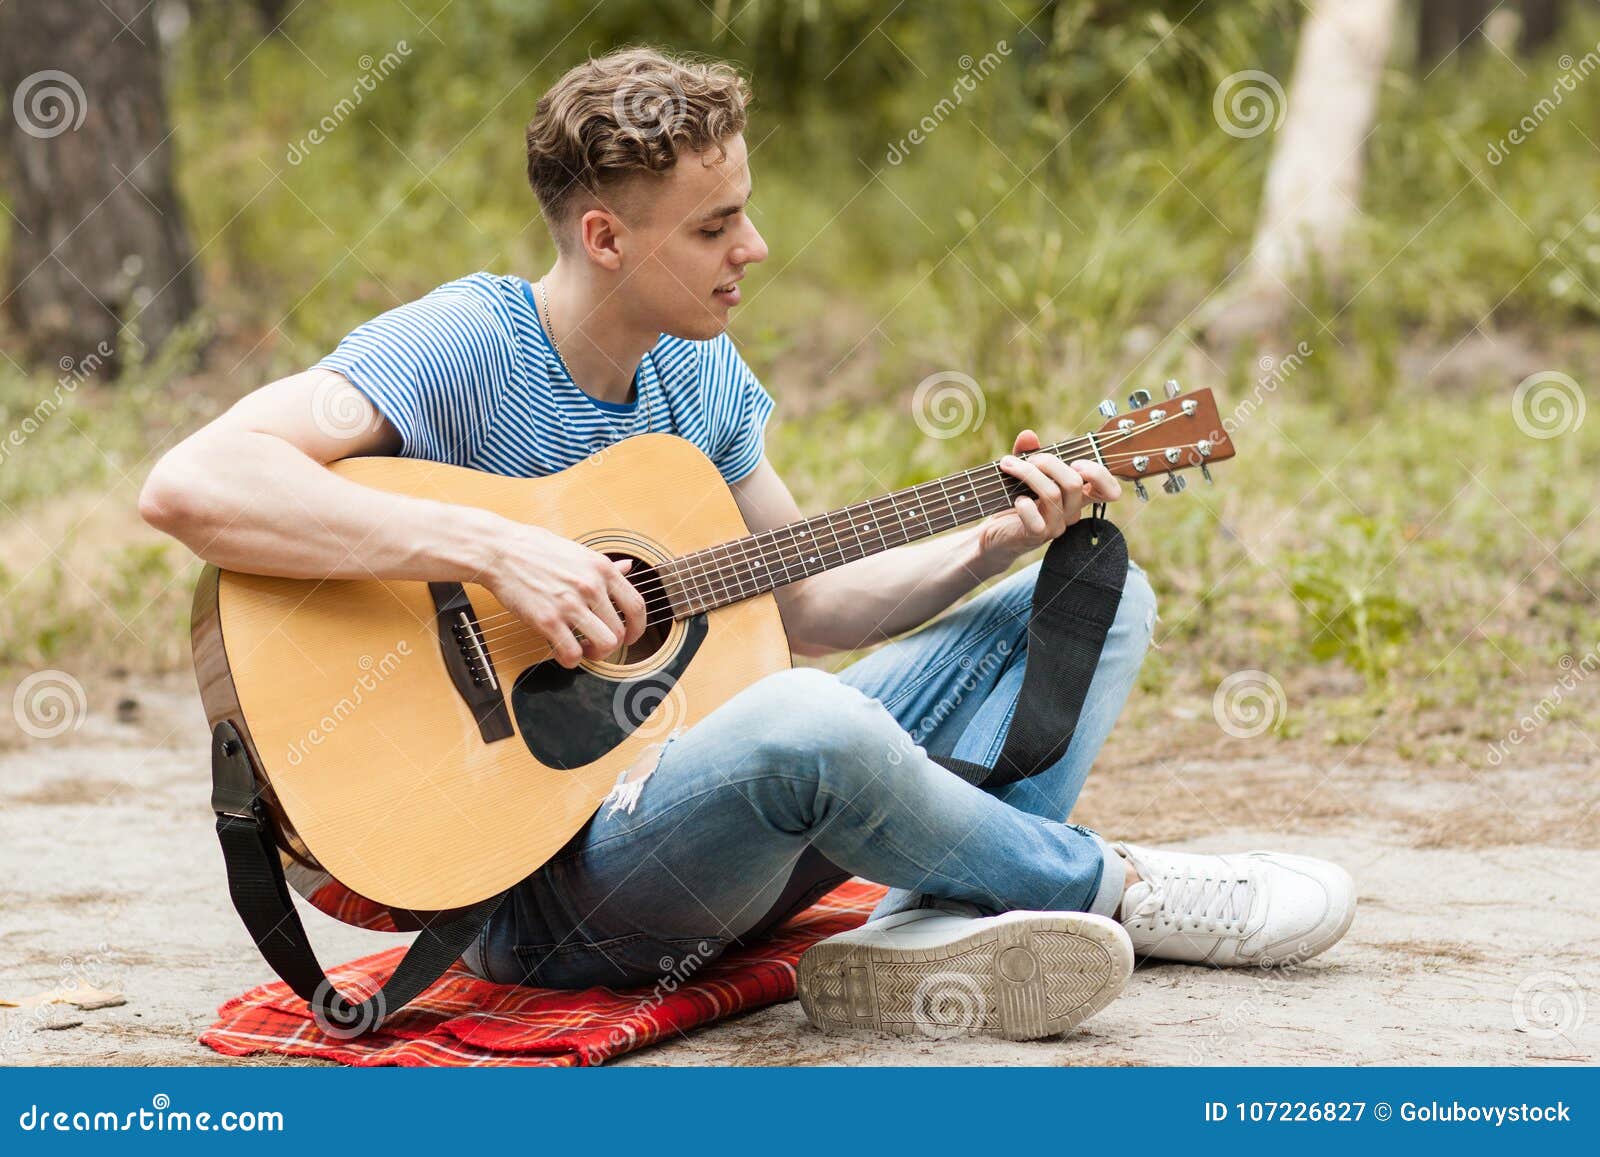 He can play guitar. Человек с гитарой. Парень с гитарой на природе. Человек с электрогитарой. Человек с гитарой в руках.